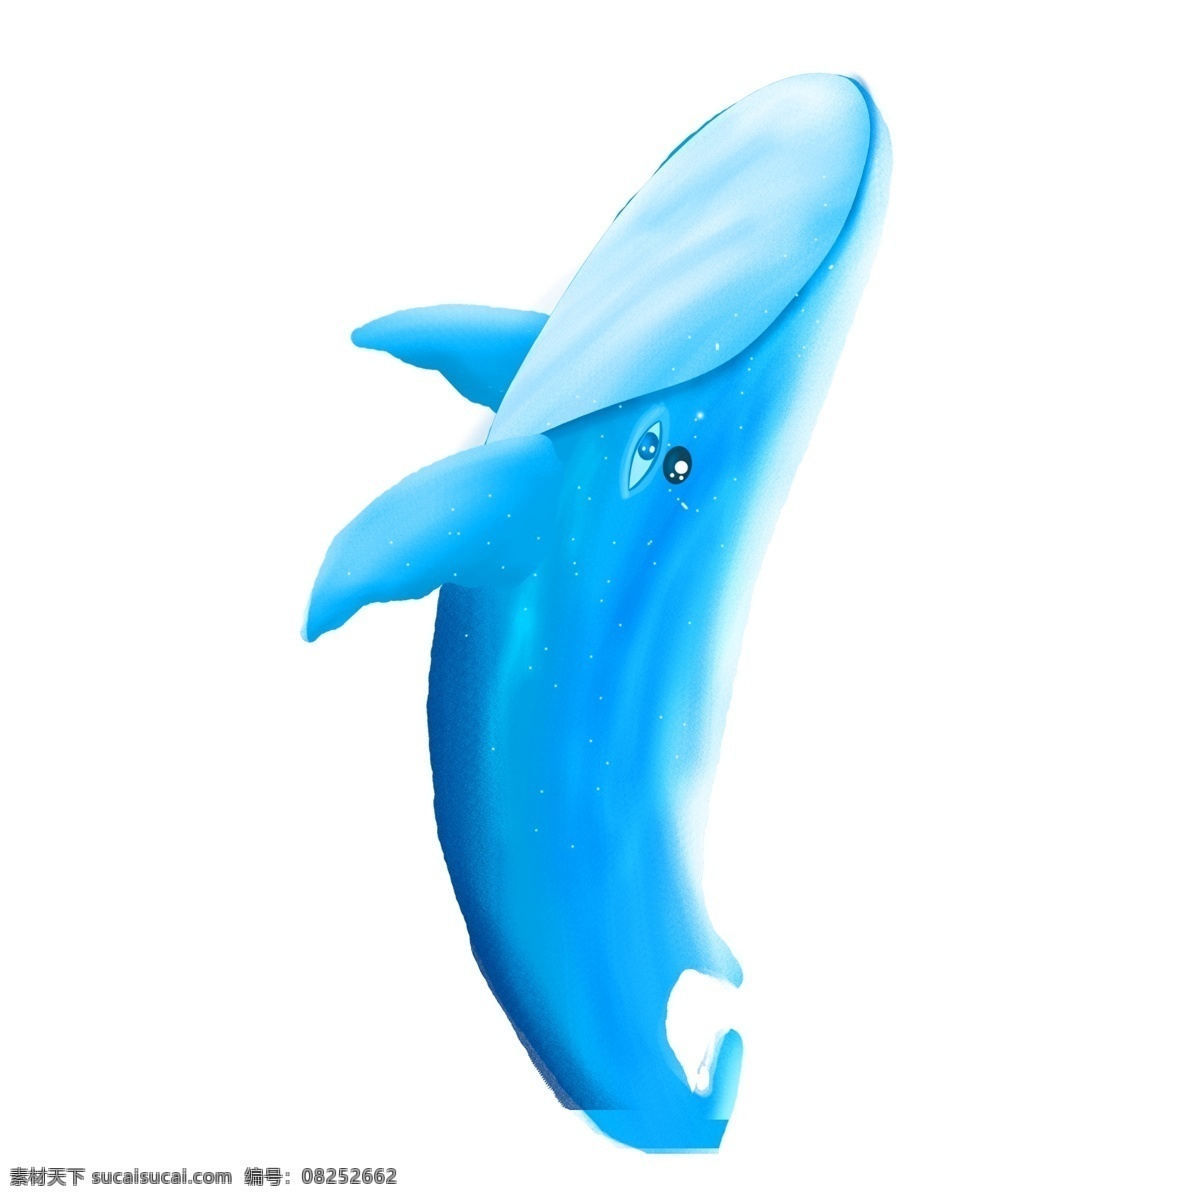 蓝色 清新 鲸鱼 动物 卡通 手绘 插画 海洋生物 蓝鲸 鱼类